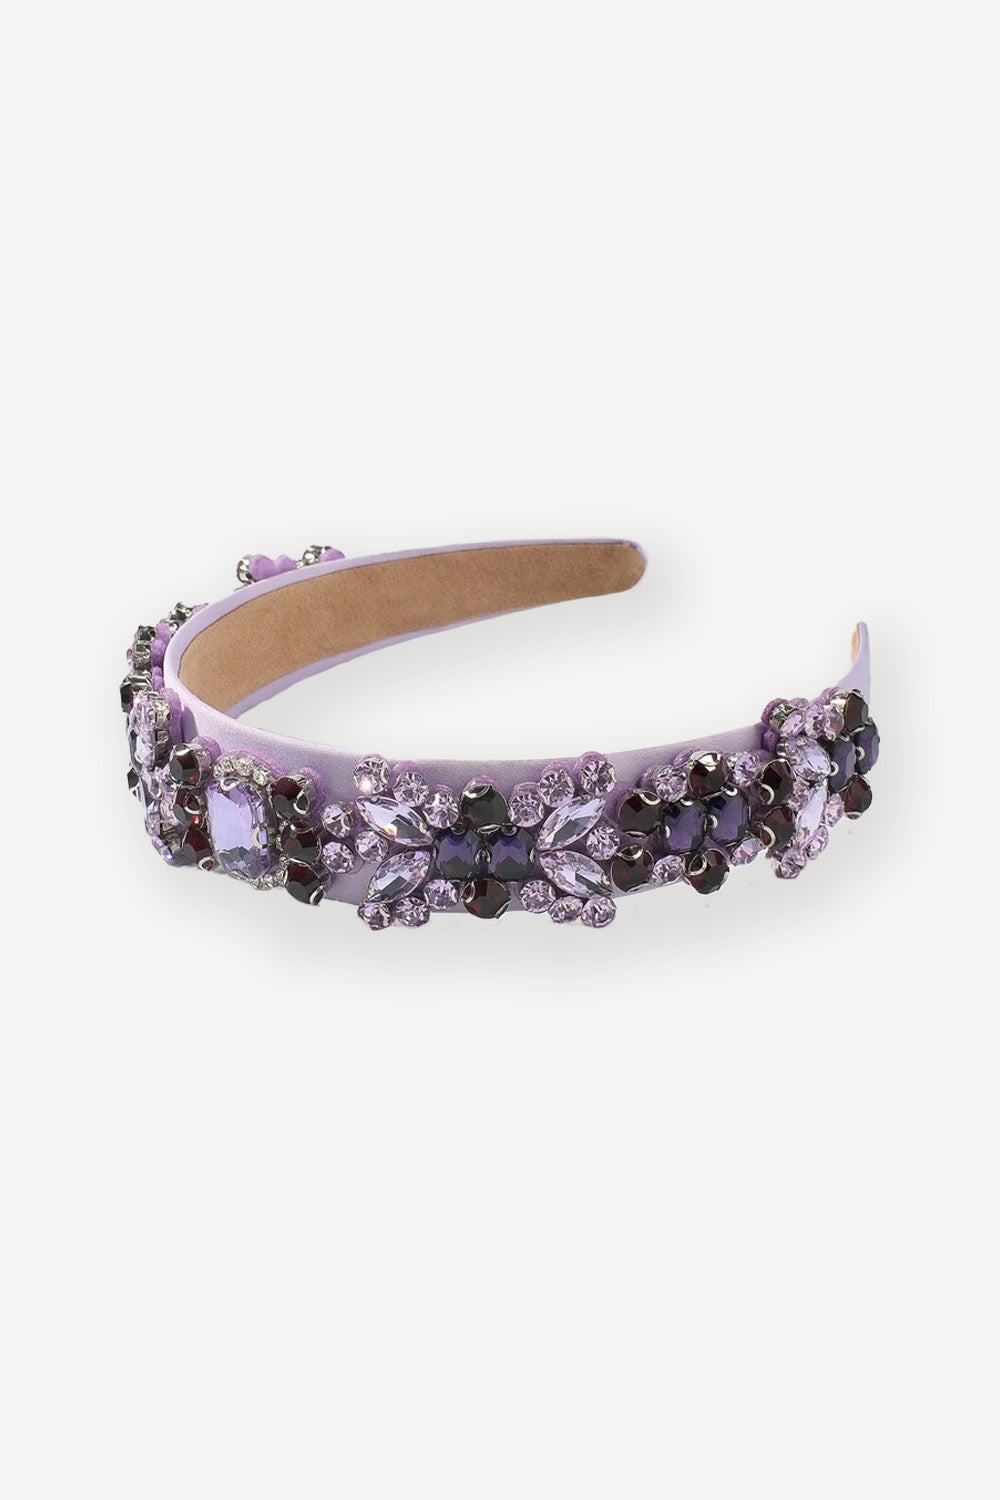 Crystal headband in lilac